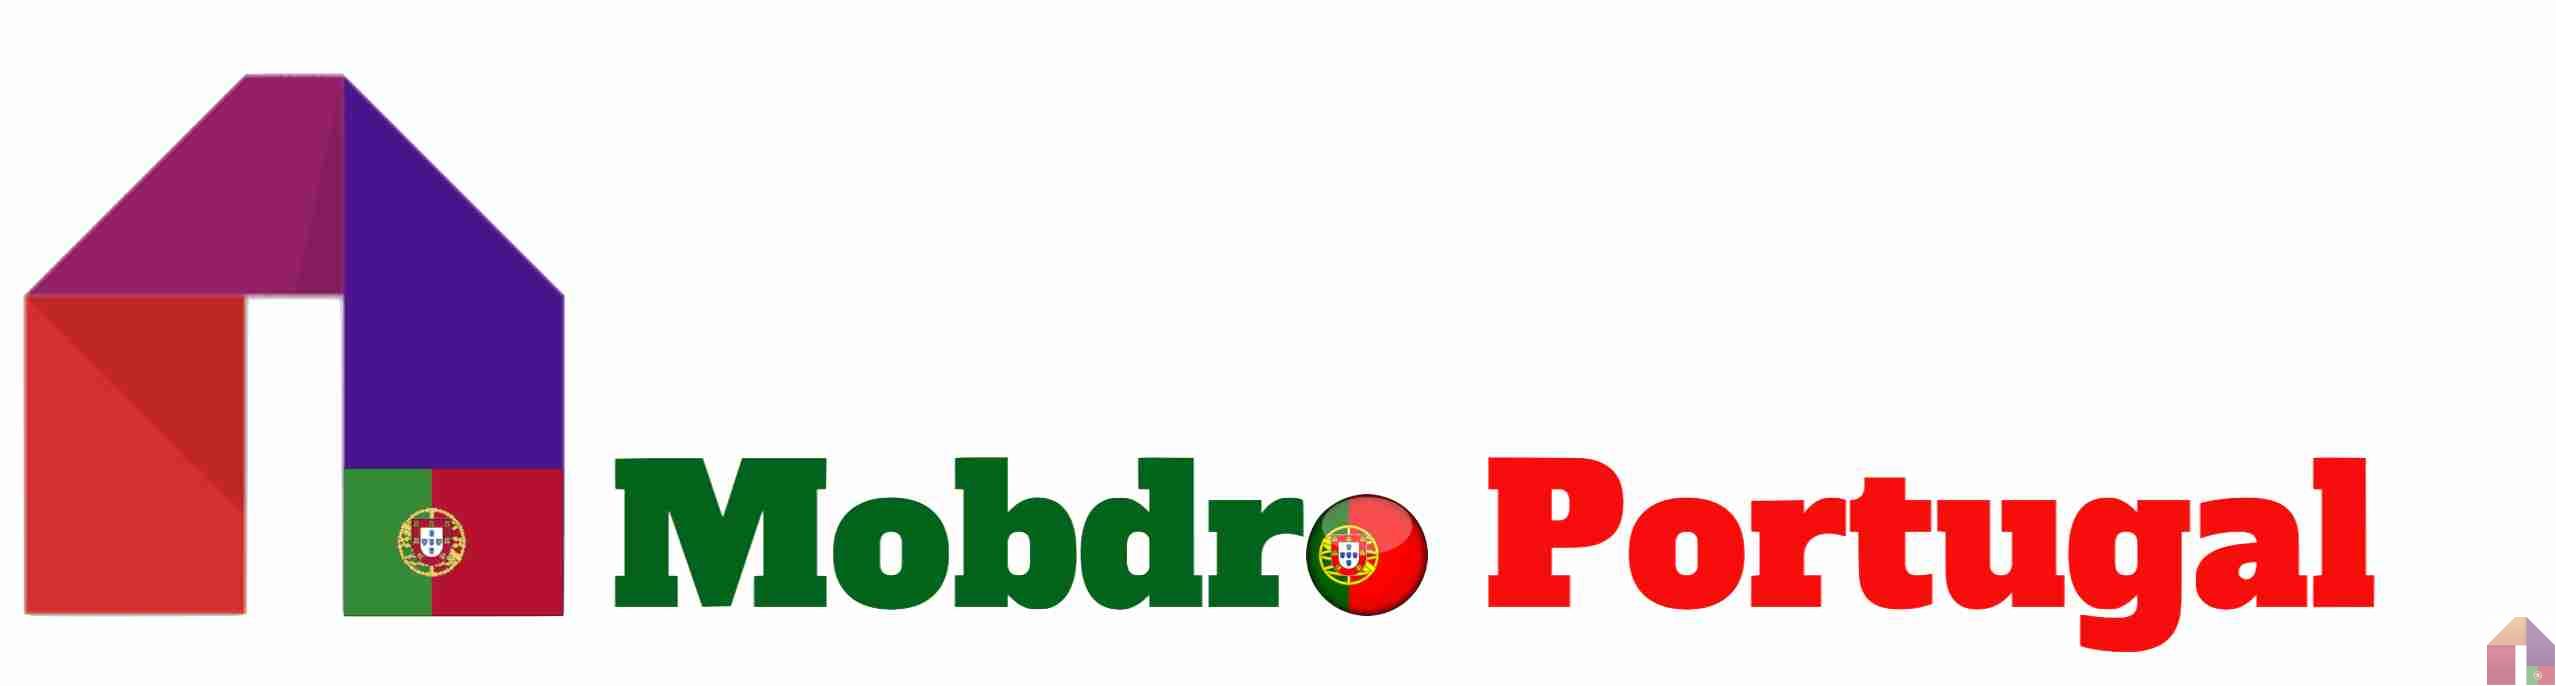 Mobdro Portugal